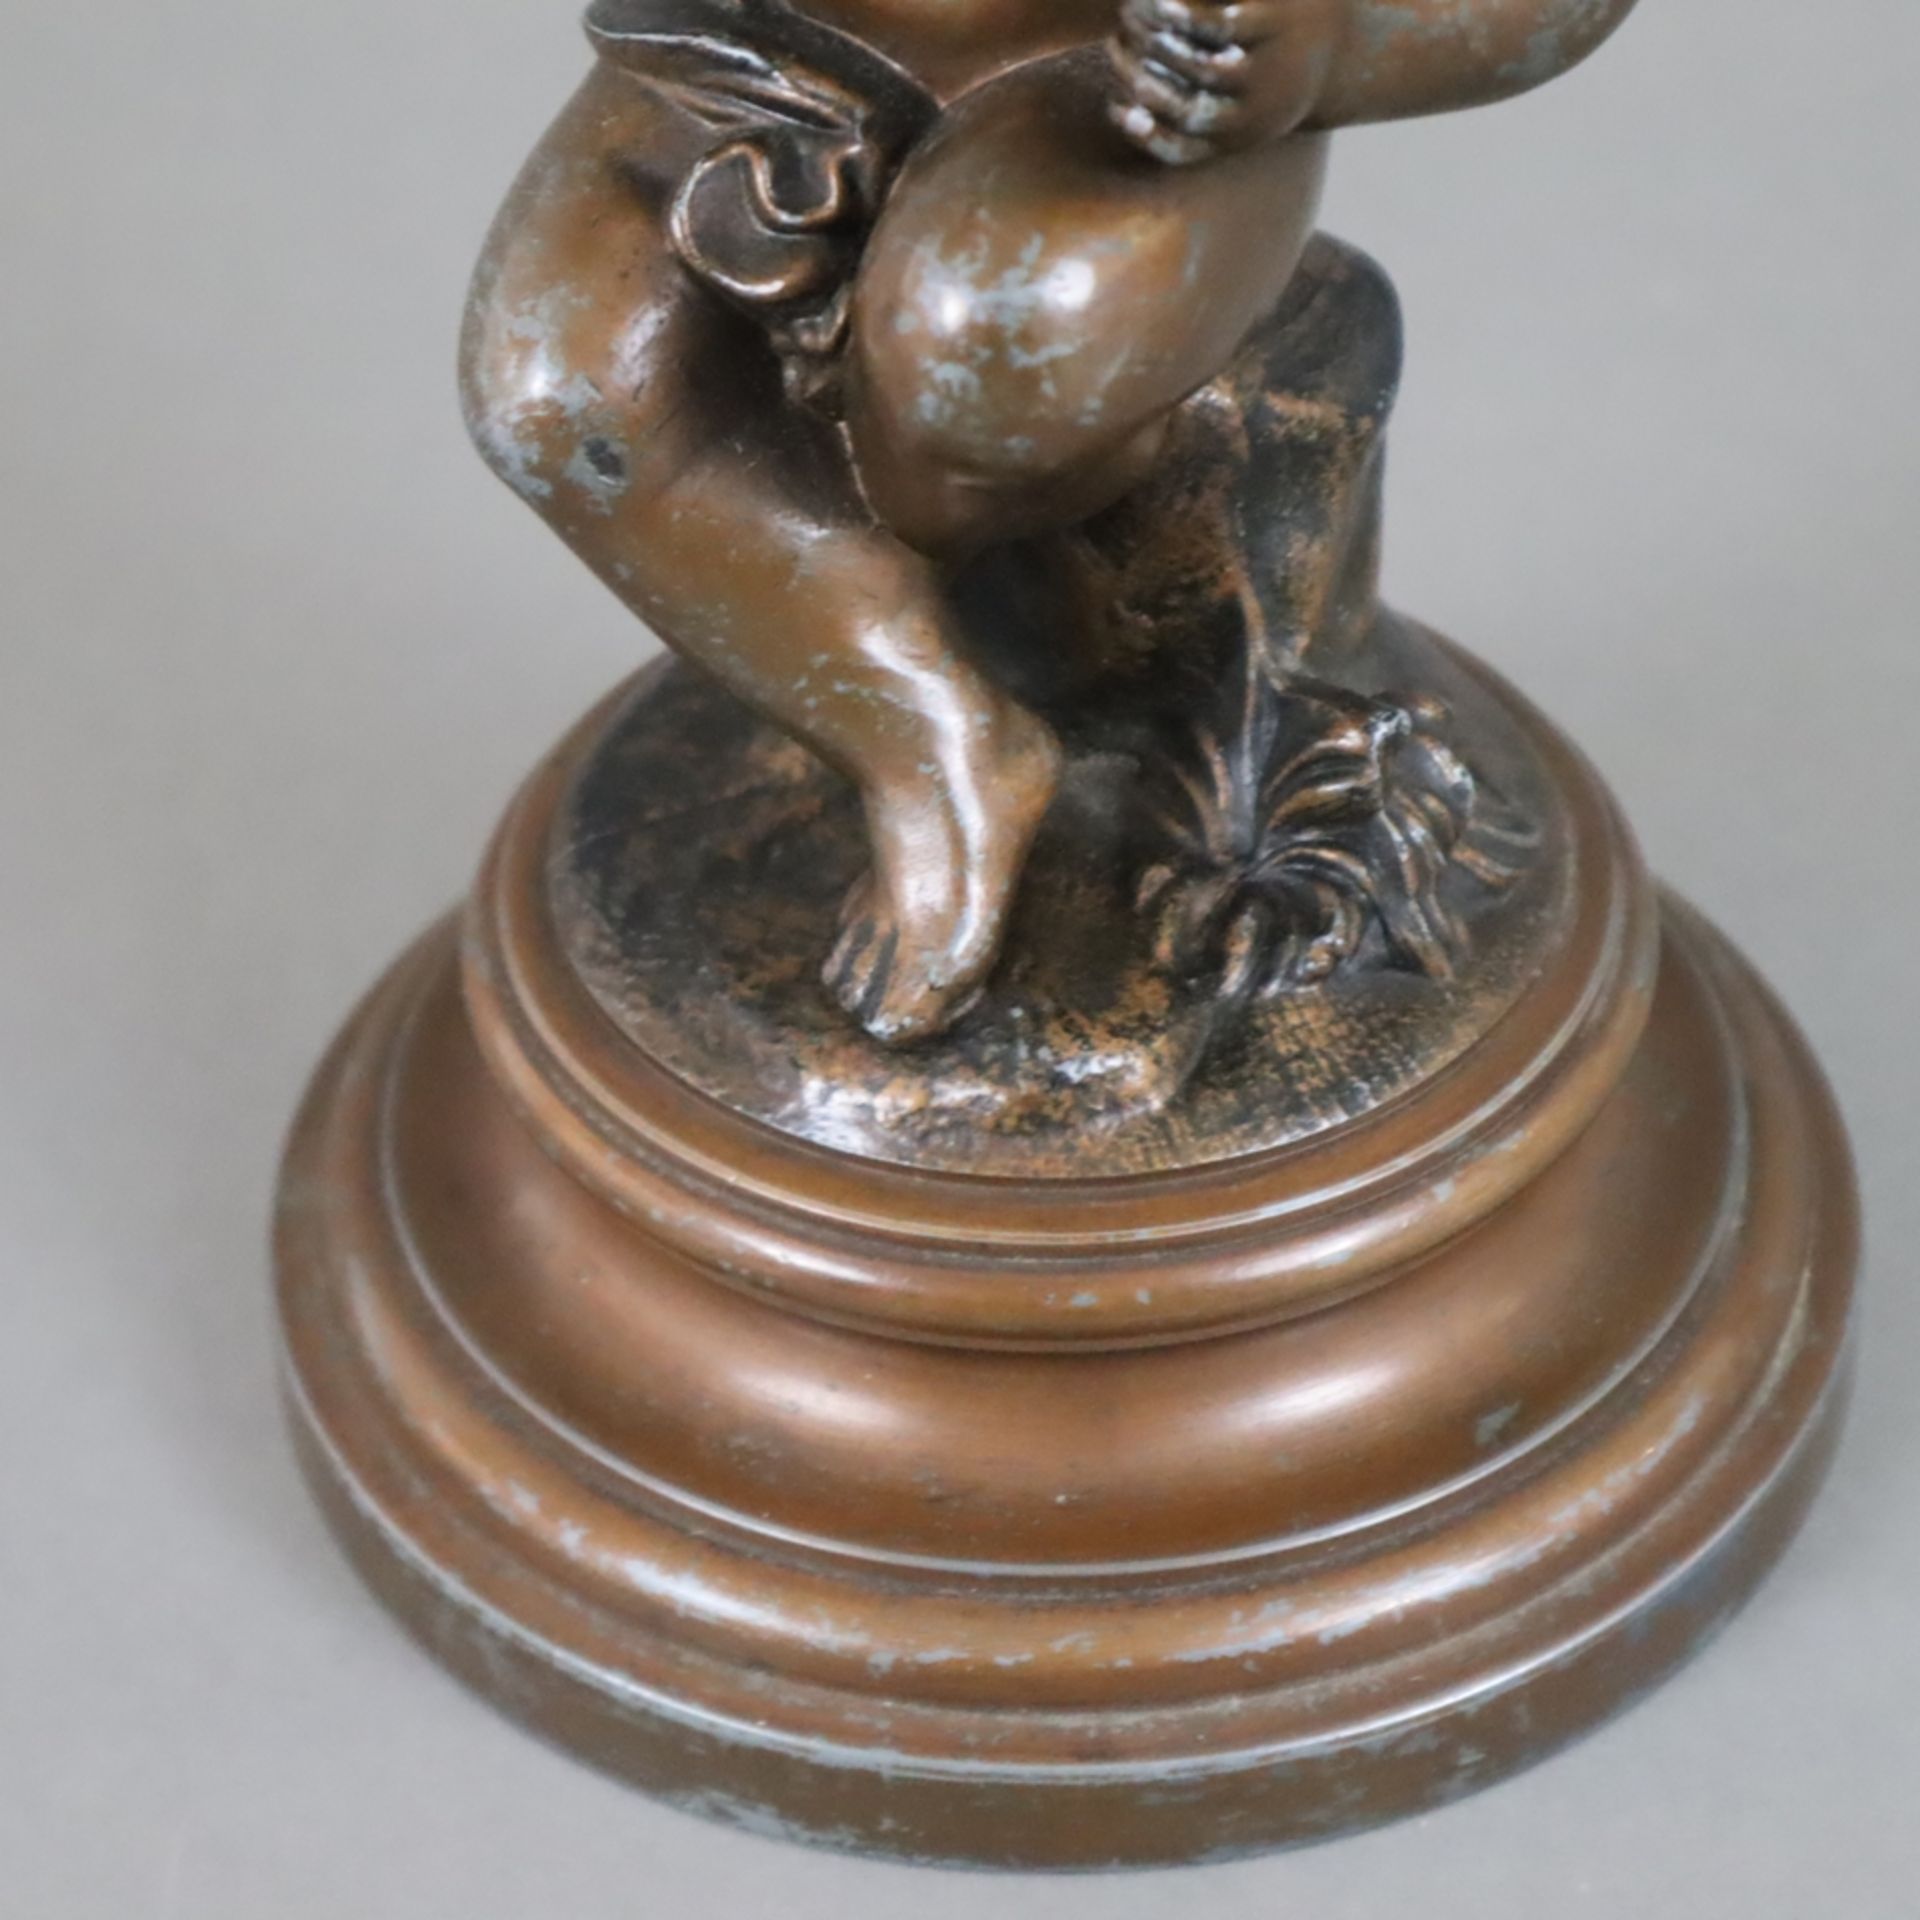 Figürliche Öllampe- 19.Jh., Metallguss, bronziert, auf Baumstumpfsockel sitzender Amor mit Pfeife, - Image 11 of 12